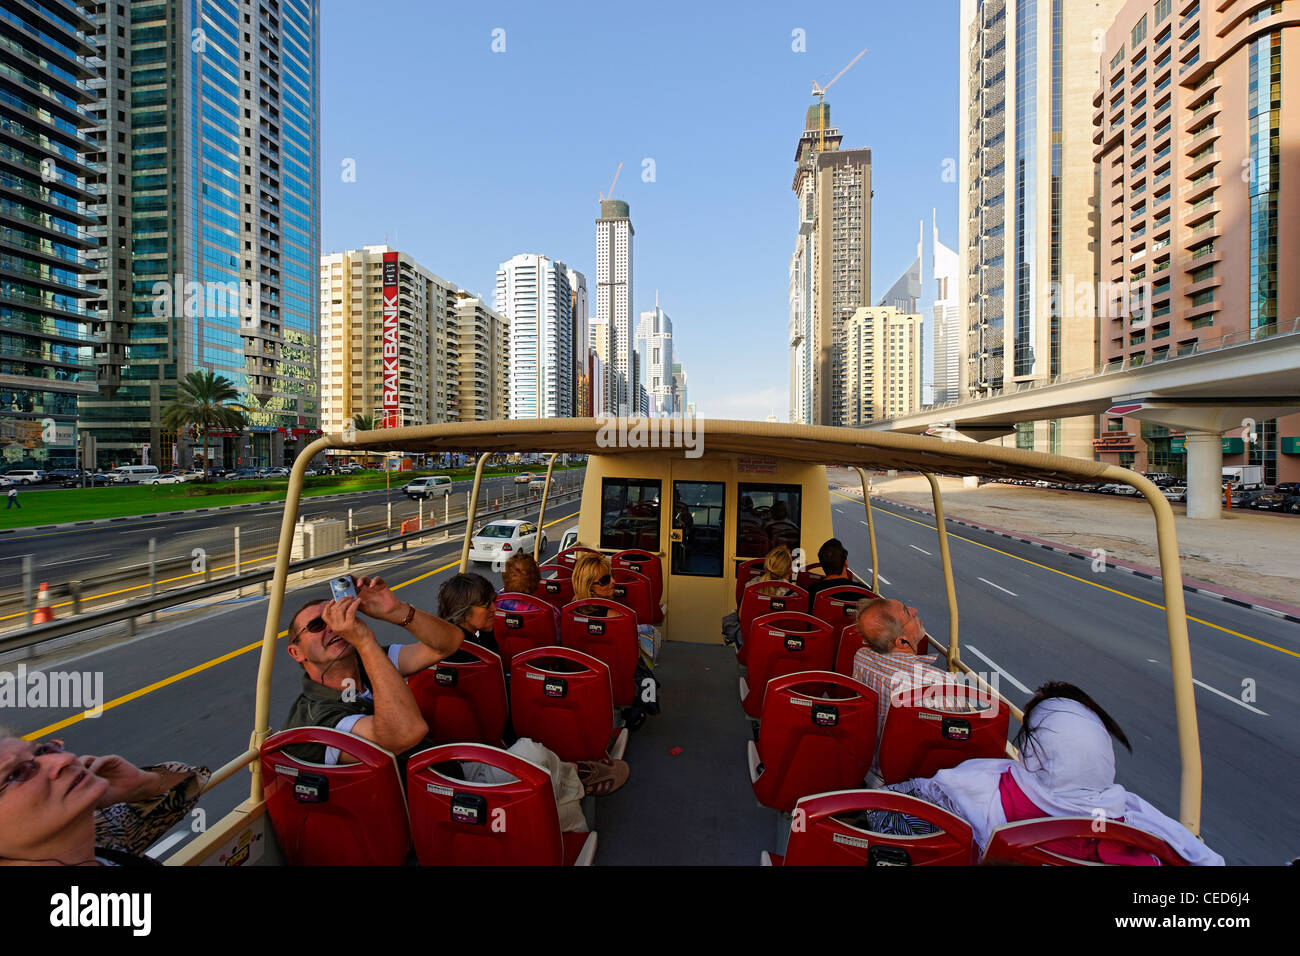 Les touristes équitation de l'BIG BUS sur la route Sheikh Zayed, tours, gratte-ciel, d'hôtels, l'architecture moderne, du quartier financier, Dubaï Banque D'Images